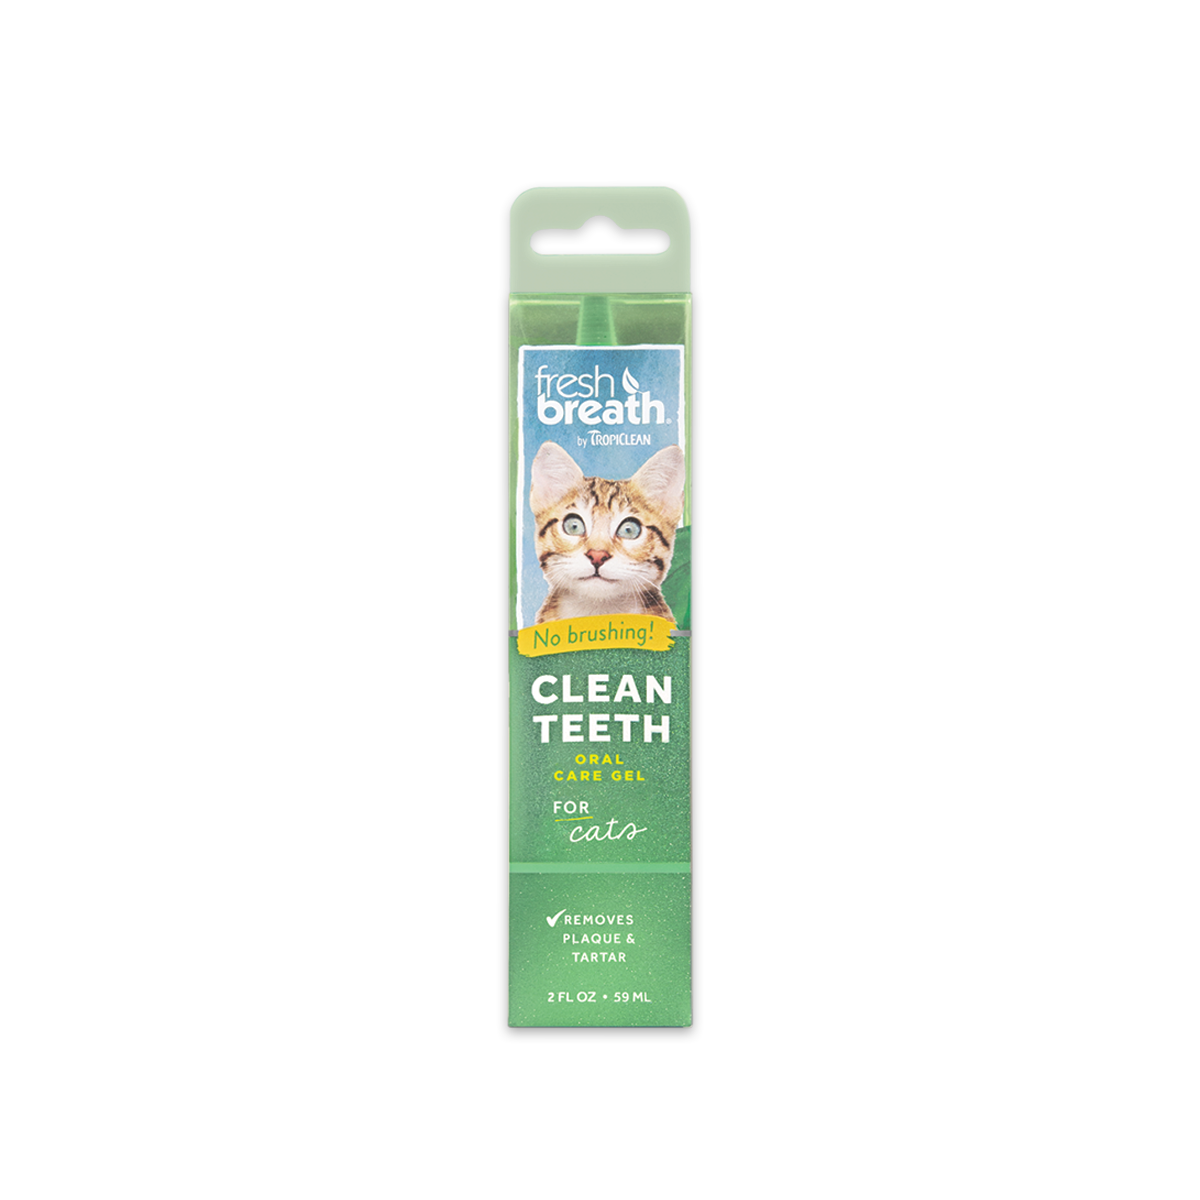 Tropiclean Clean Teeth Oral Care Gel ทรอปิคลีน เจลทำความสะอาดฟันสำหรับแมว ขนาด 2 ออนซ์